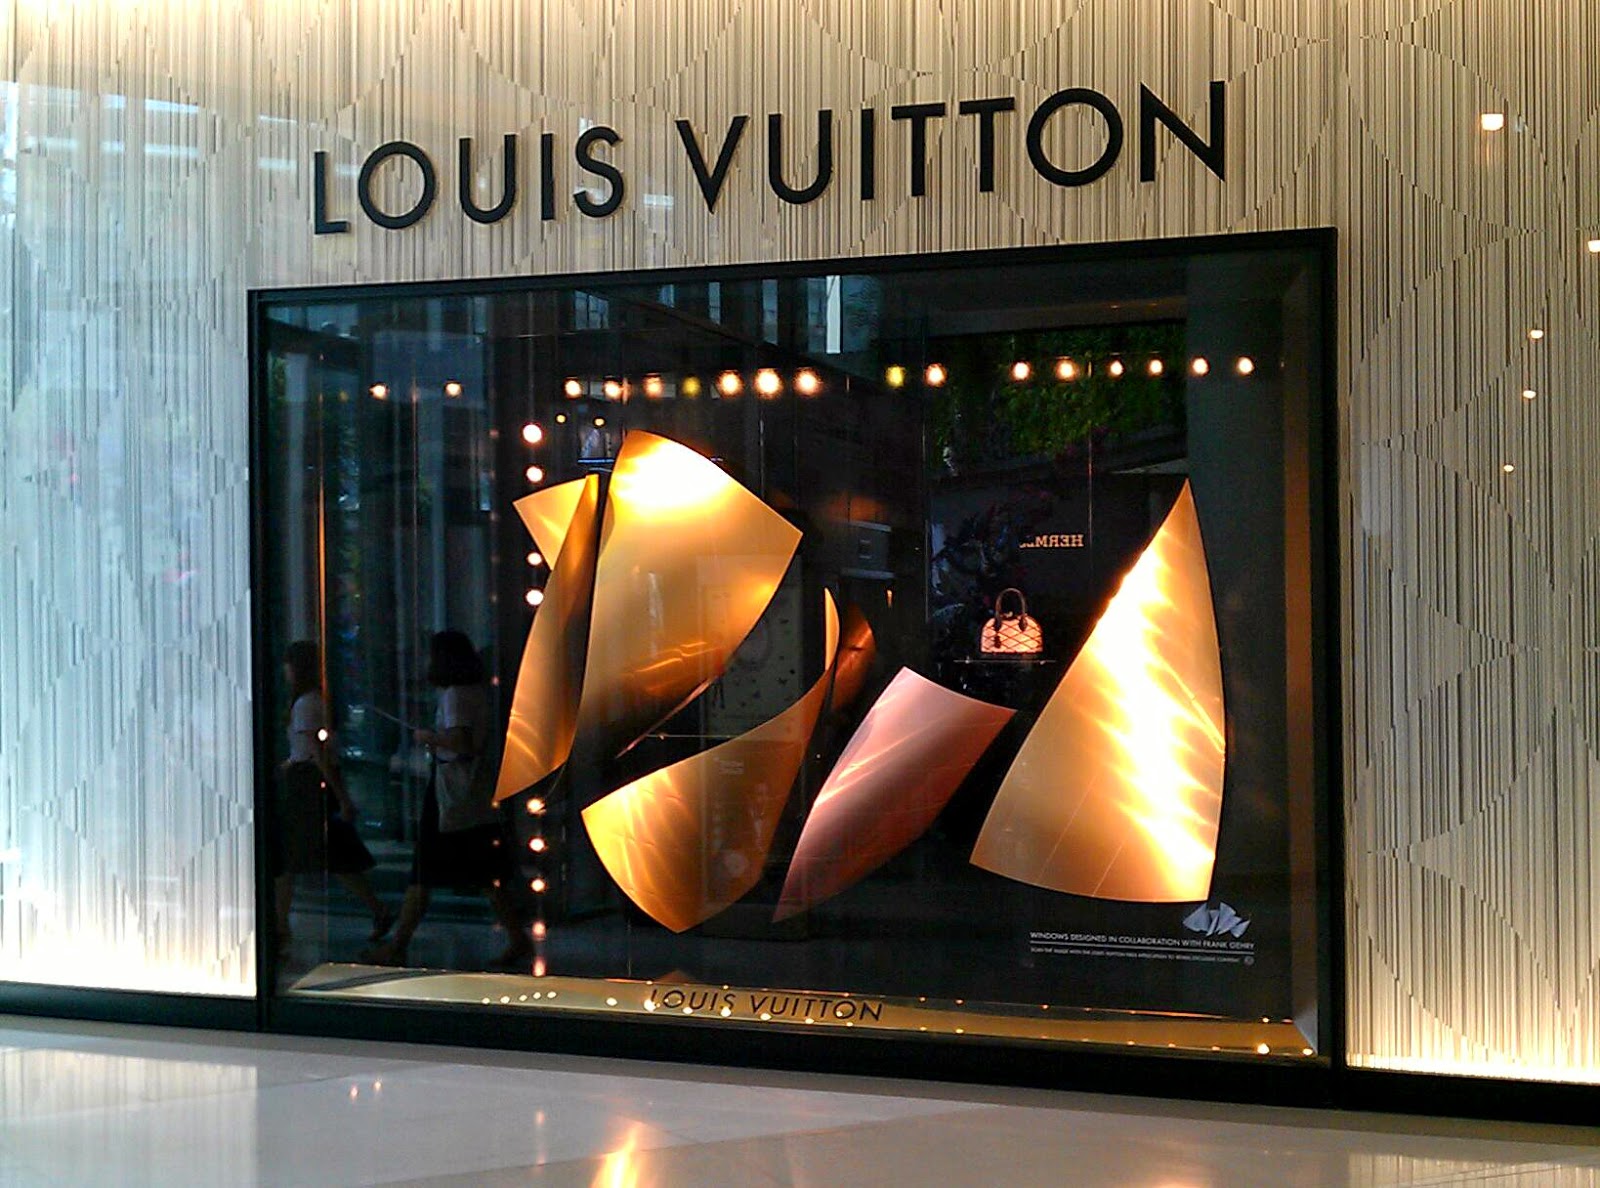 LOUIS VUITTON windows, Siam Paragon Bangkok